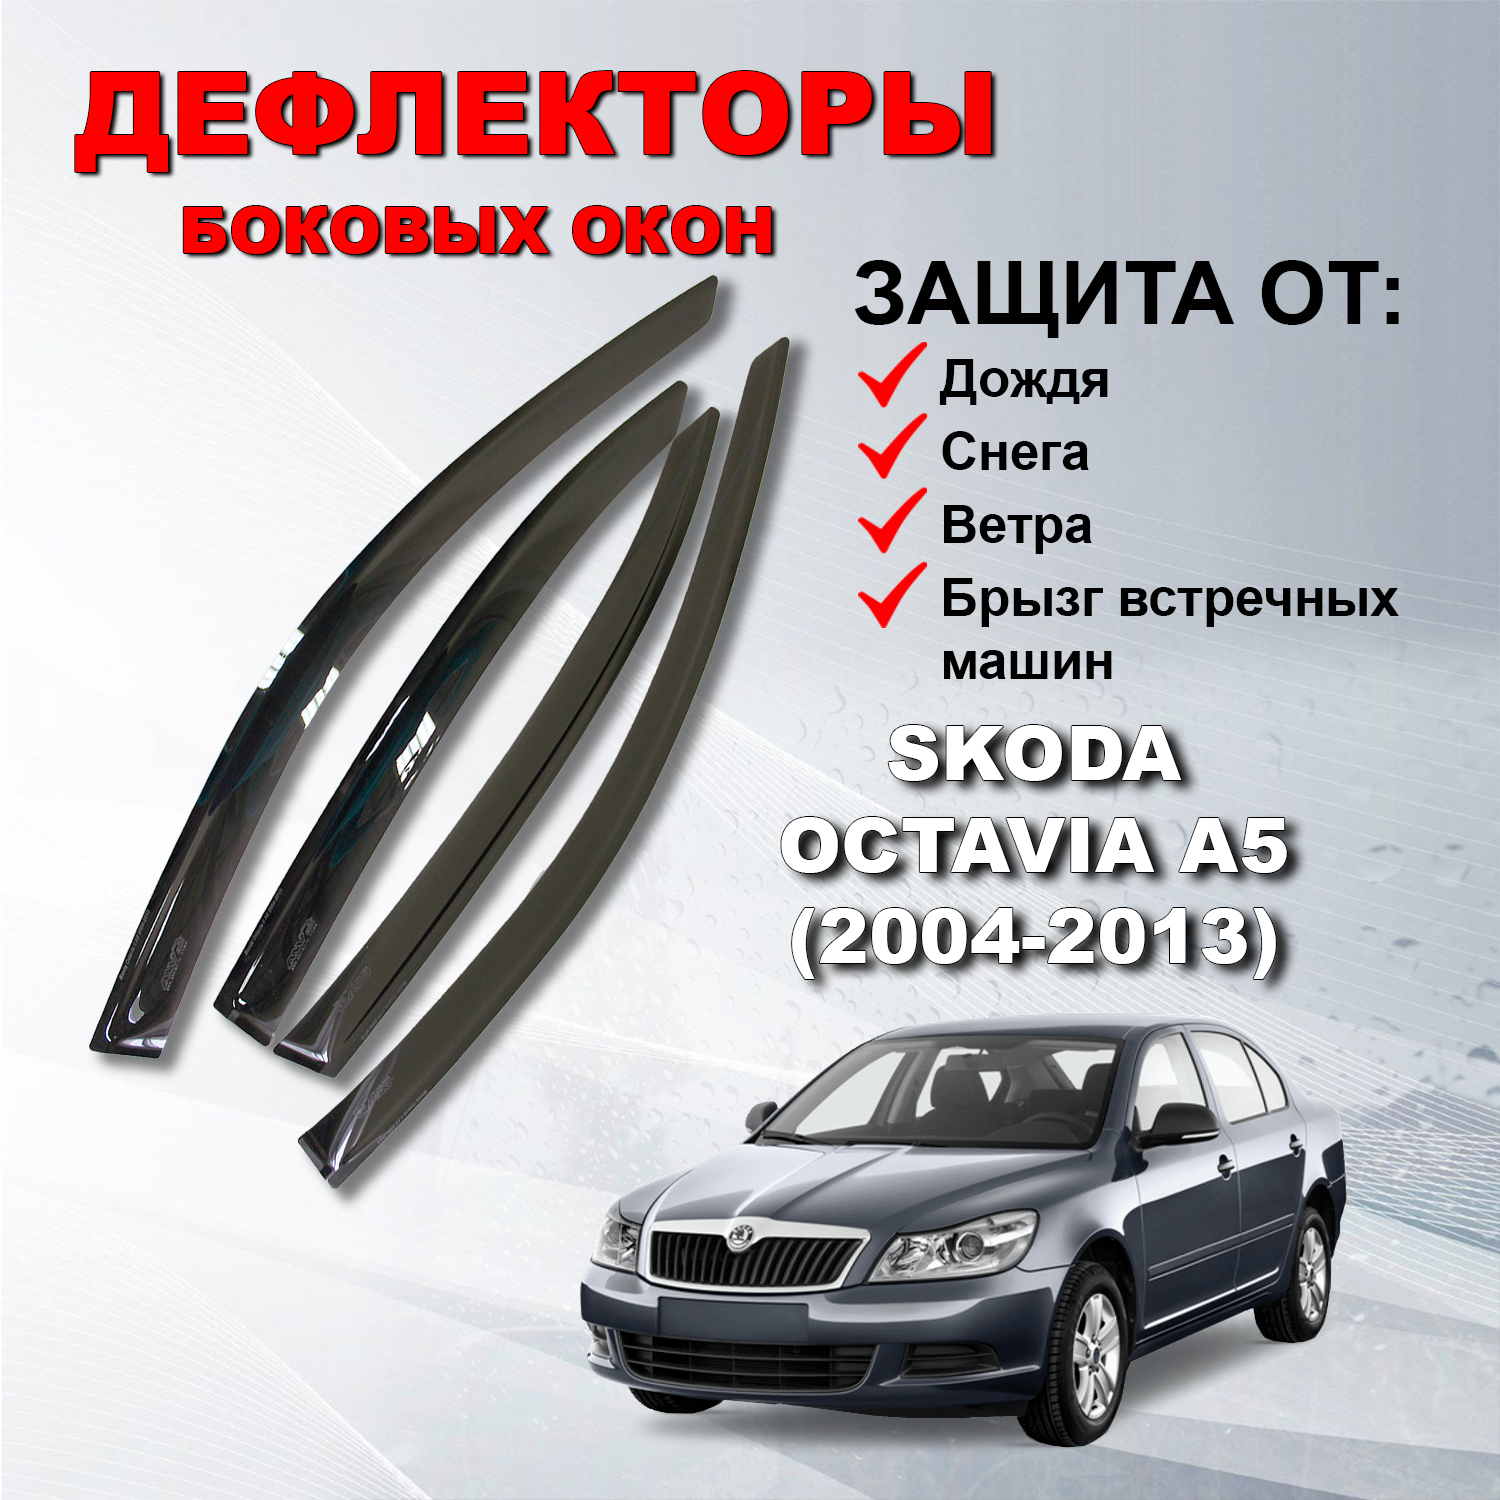 Дефлекторы боковых окон (Ветровики) на Шкода Октавия А5 седан / Skoda Octavia А5 (2004-2013)